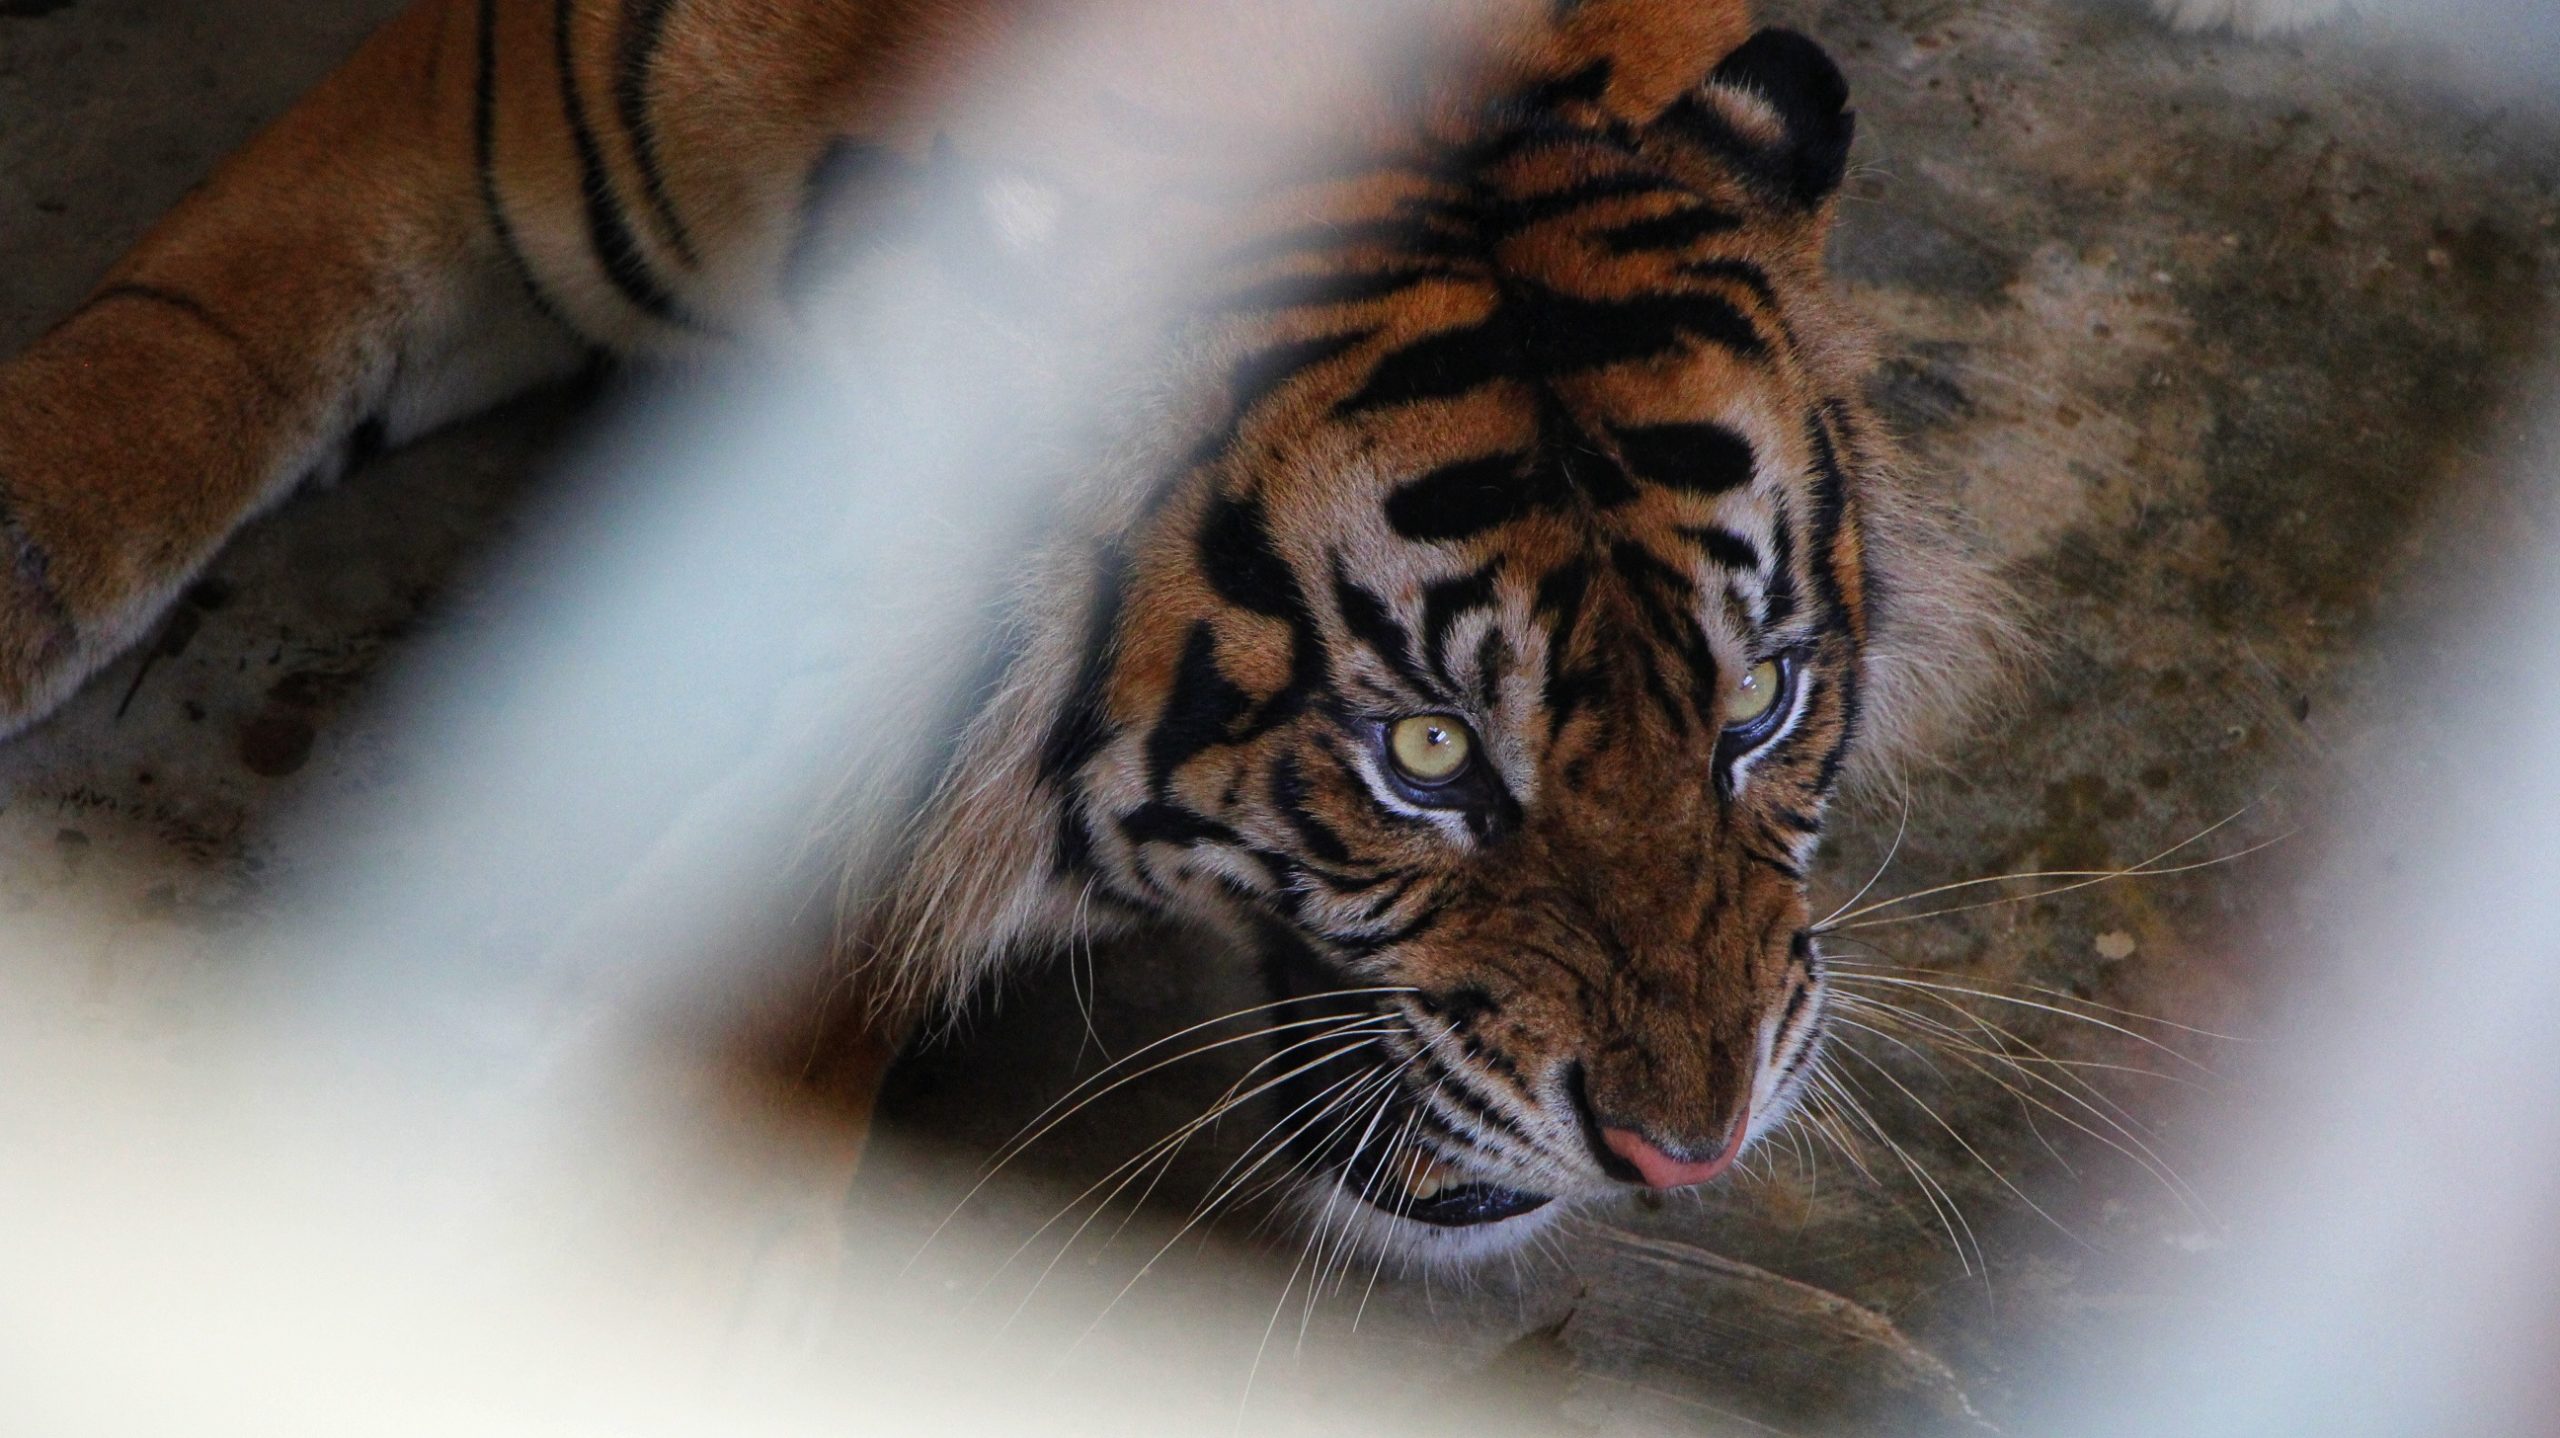 Monang, harimau korban jeratan, merupakan ayah Citra dan Surya. Citra ditemukan tewas mengenaskan 40 hari setelah lepas liar di TN kerinci Seblat. Foto: Ayat S Karokaro